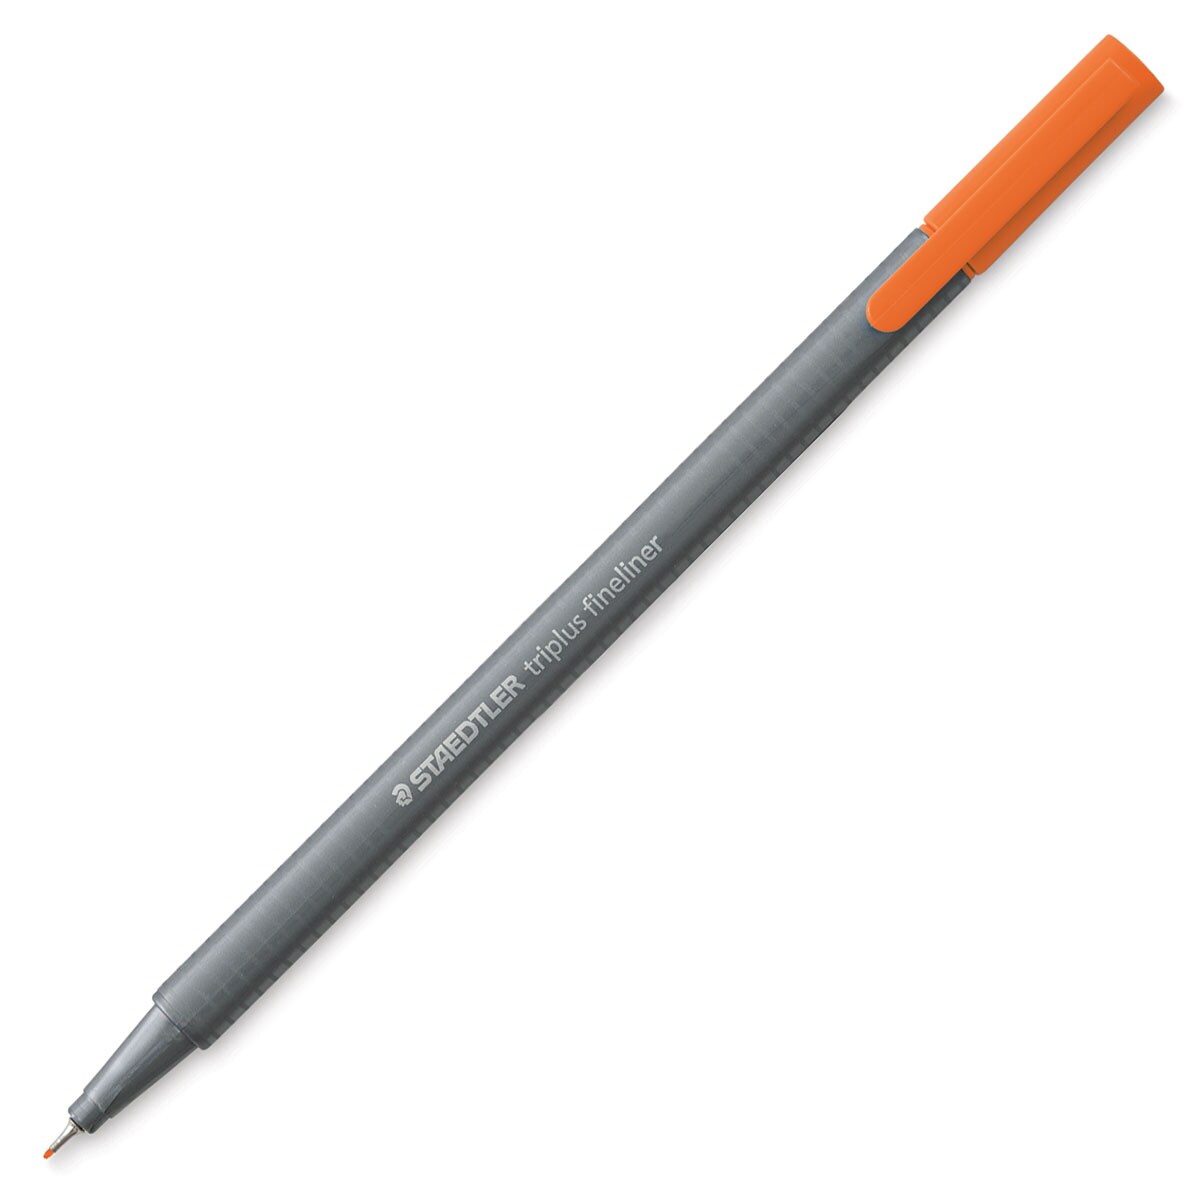 Staedtler Triplus Fineliner Pen - Orange